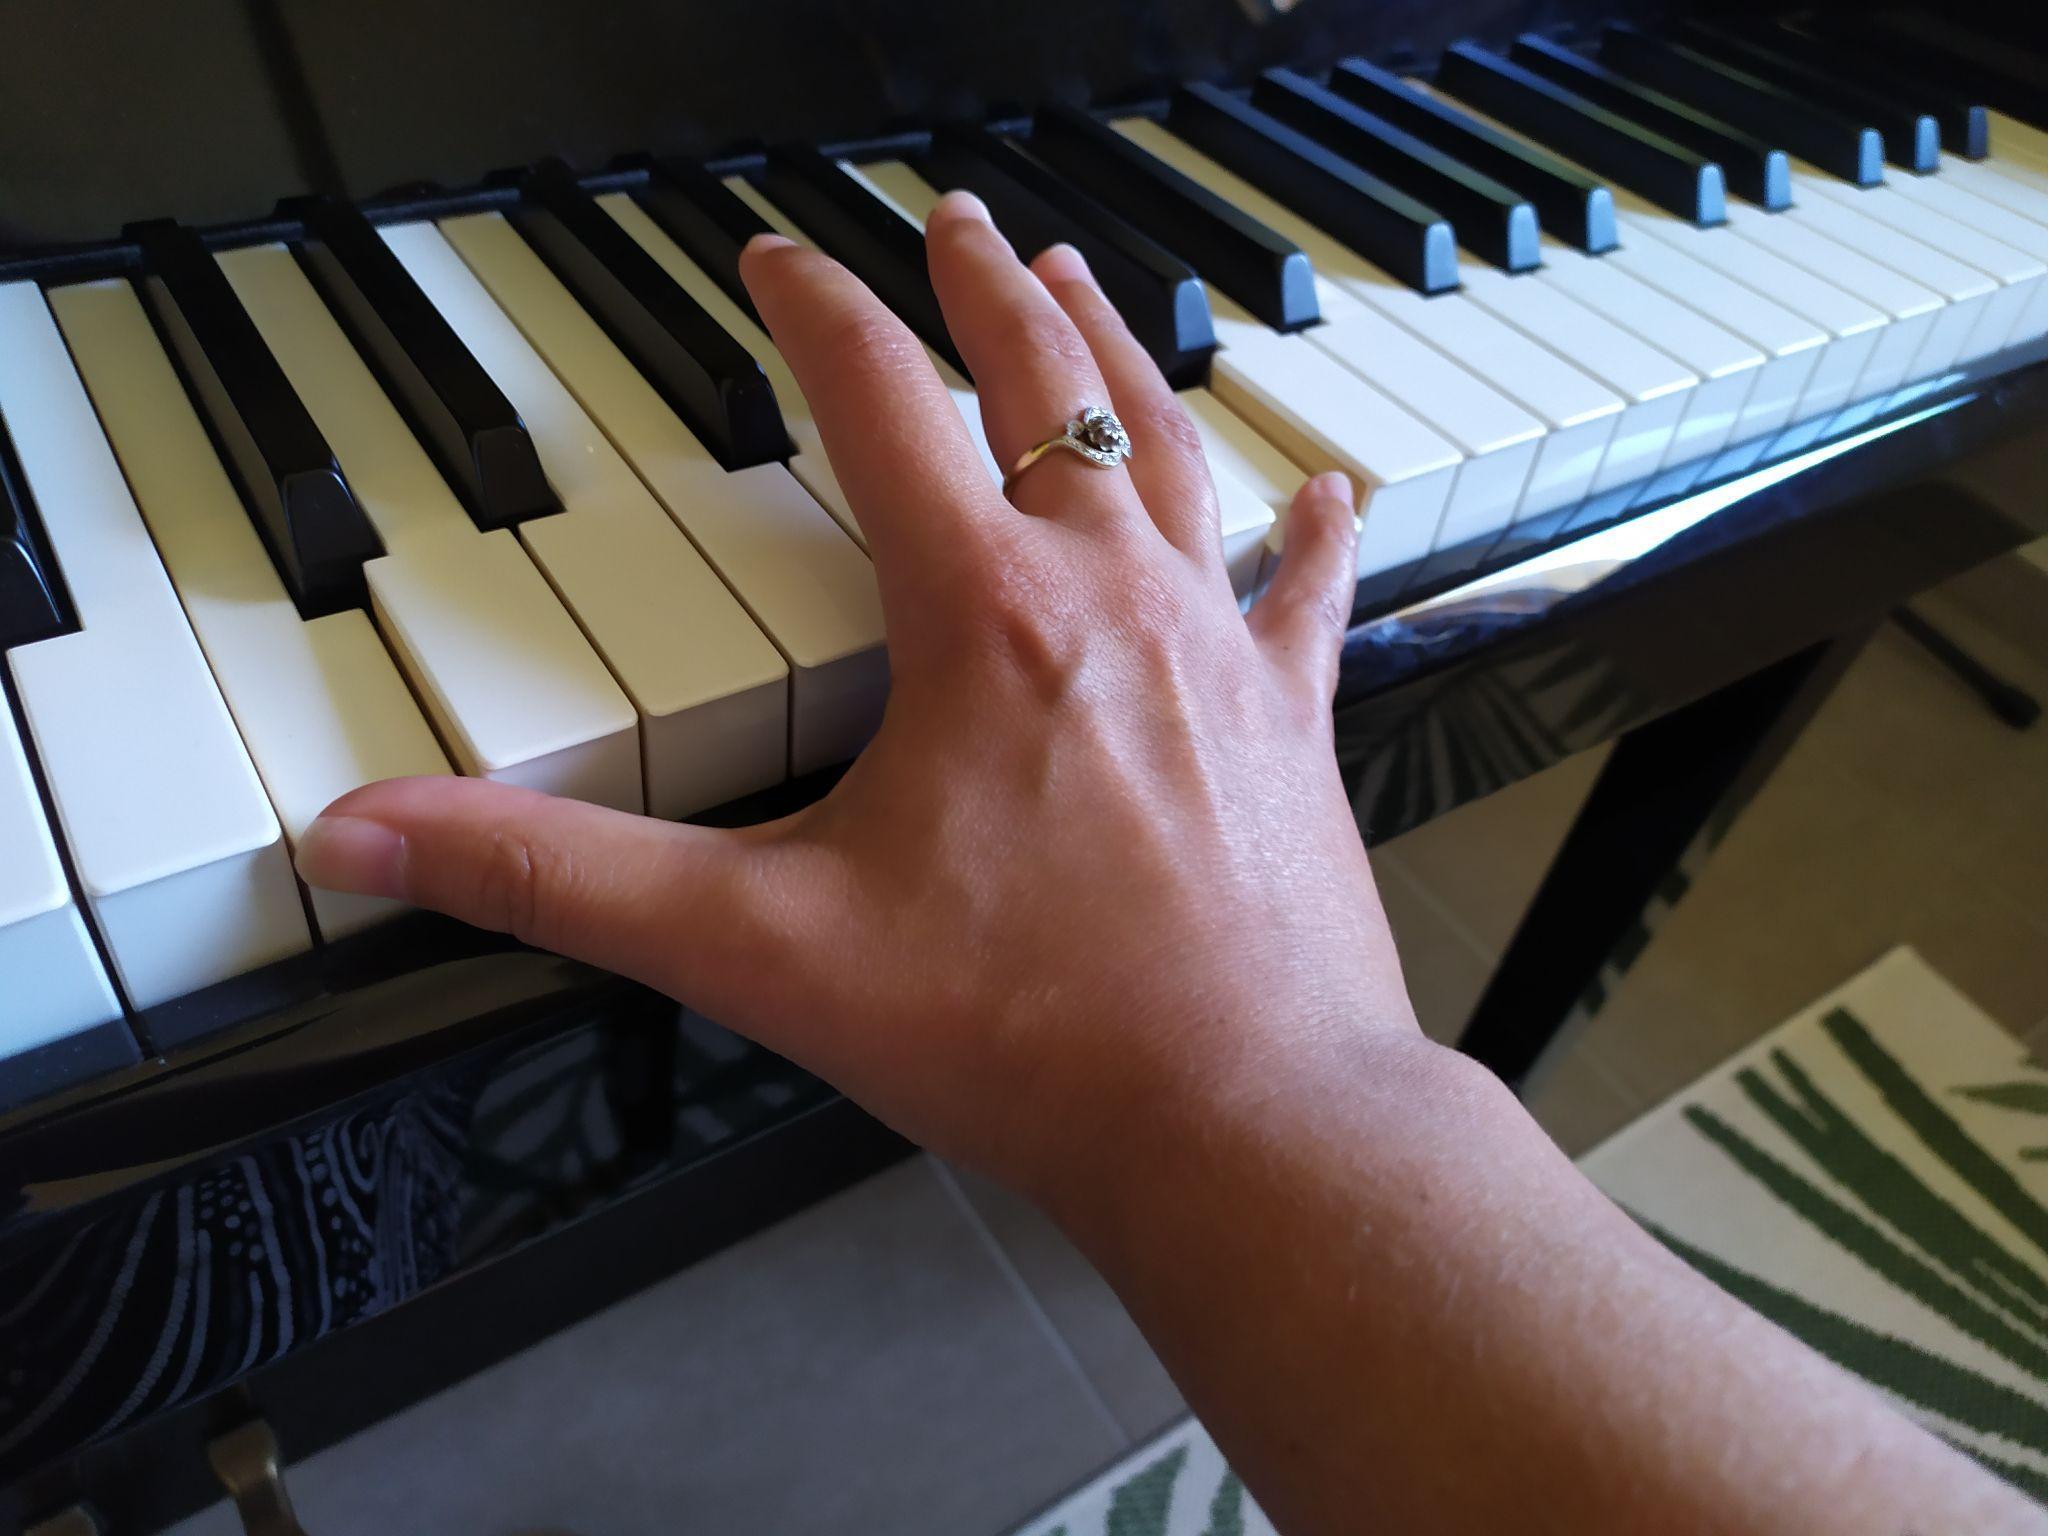 La bonne position au piano : hauteur, mains, et pieds